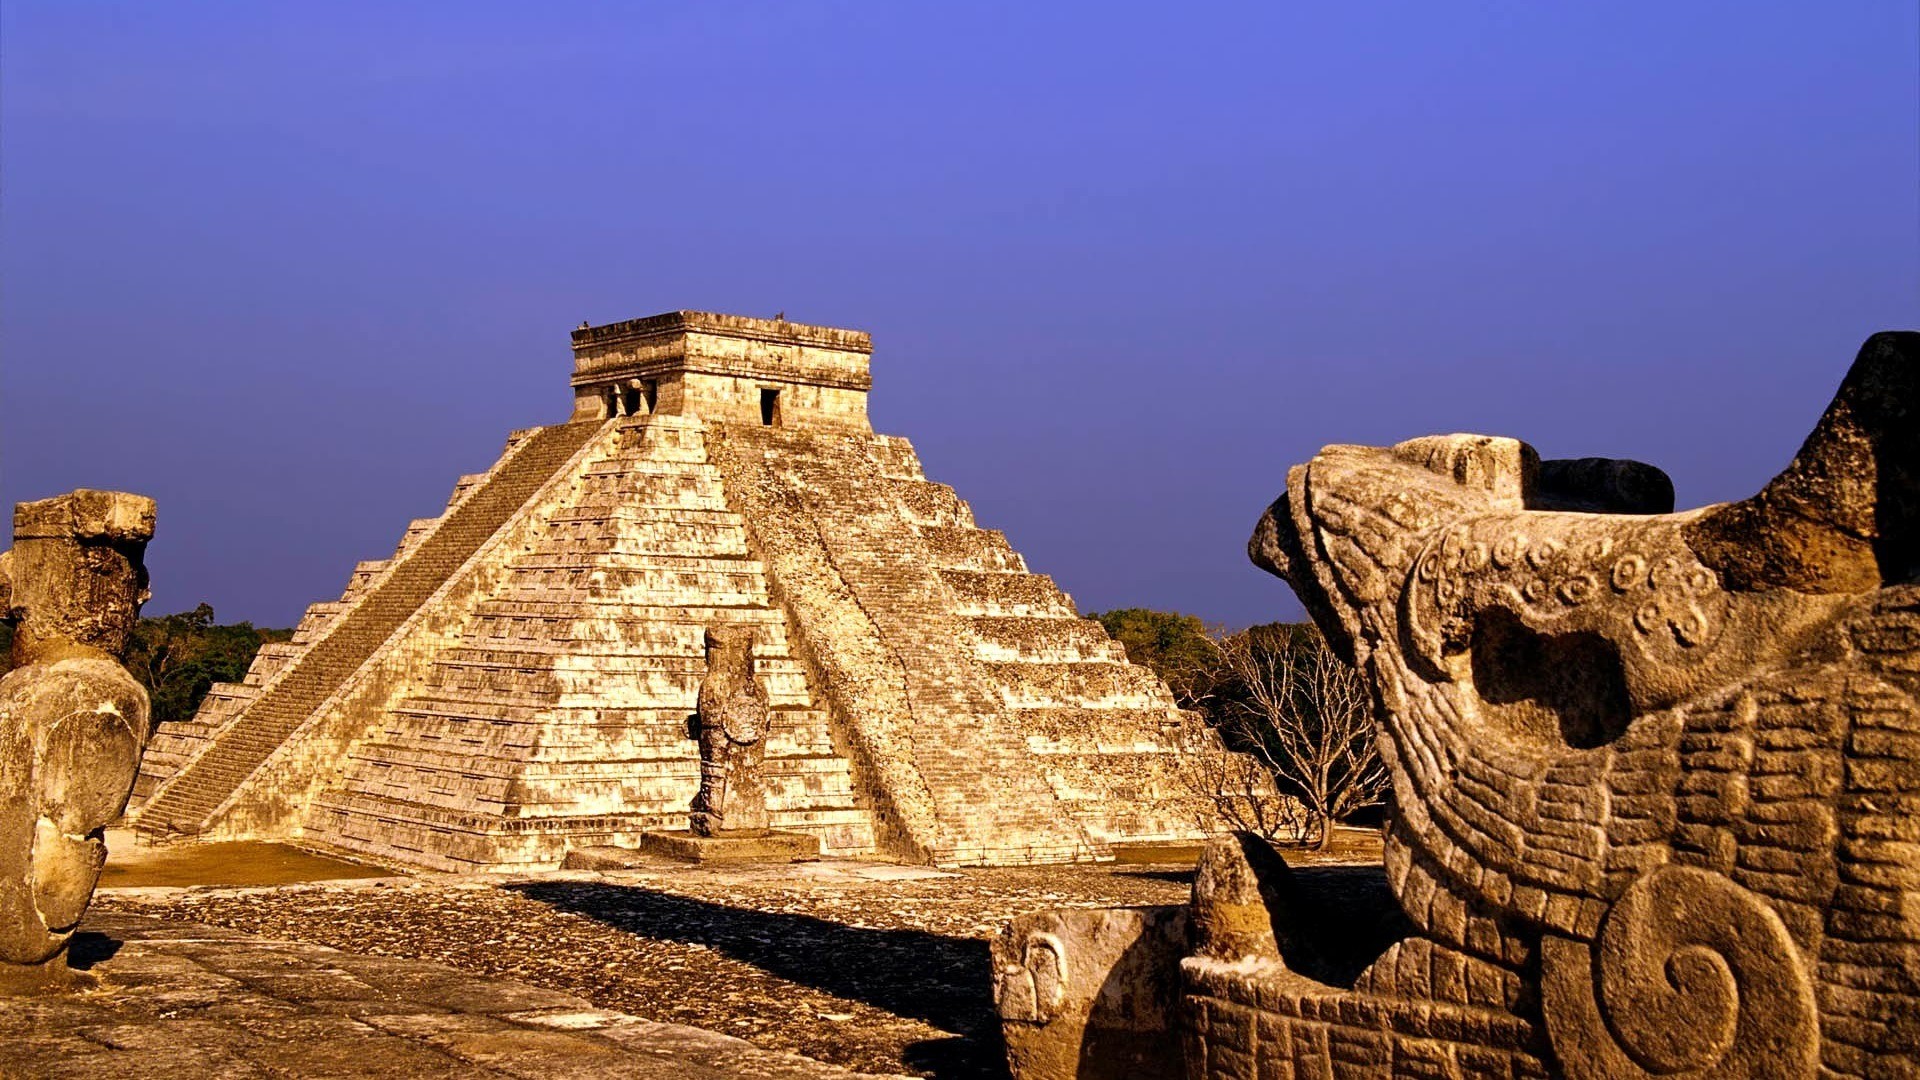 멕시코 벽지,고대 역사,고고학 유적지,세계의 불가사의,마야 문명,관광 명소